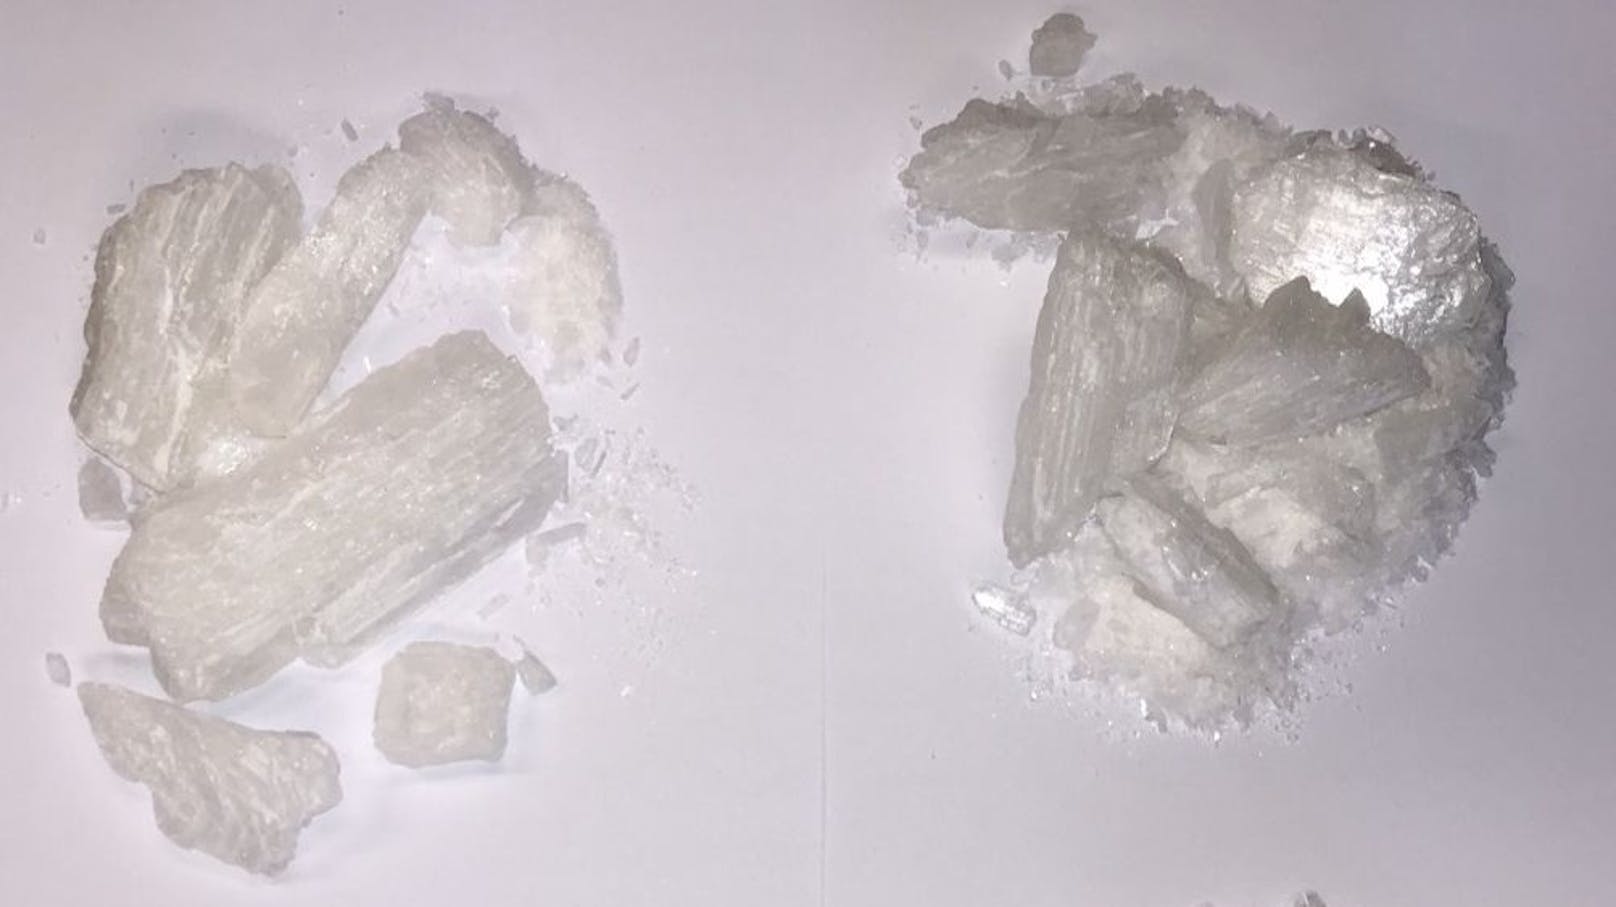 Insgesamt stellten die Beamten 624,4 Gramm Crystal Meth, 5,5 Gramm Kokain sowie eine fünfstellige Bargeldsumme sicher.